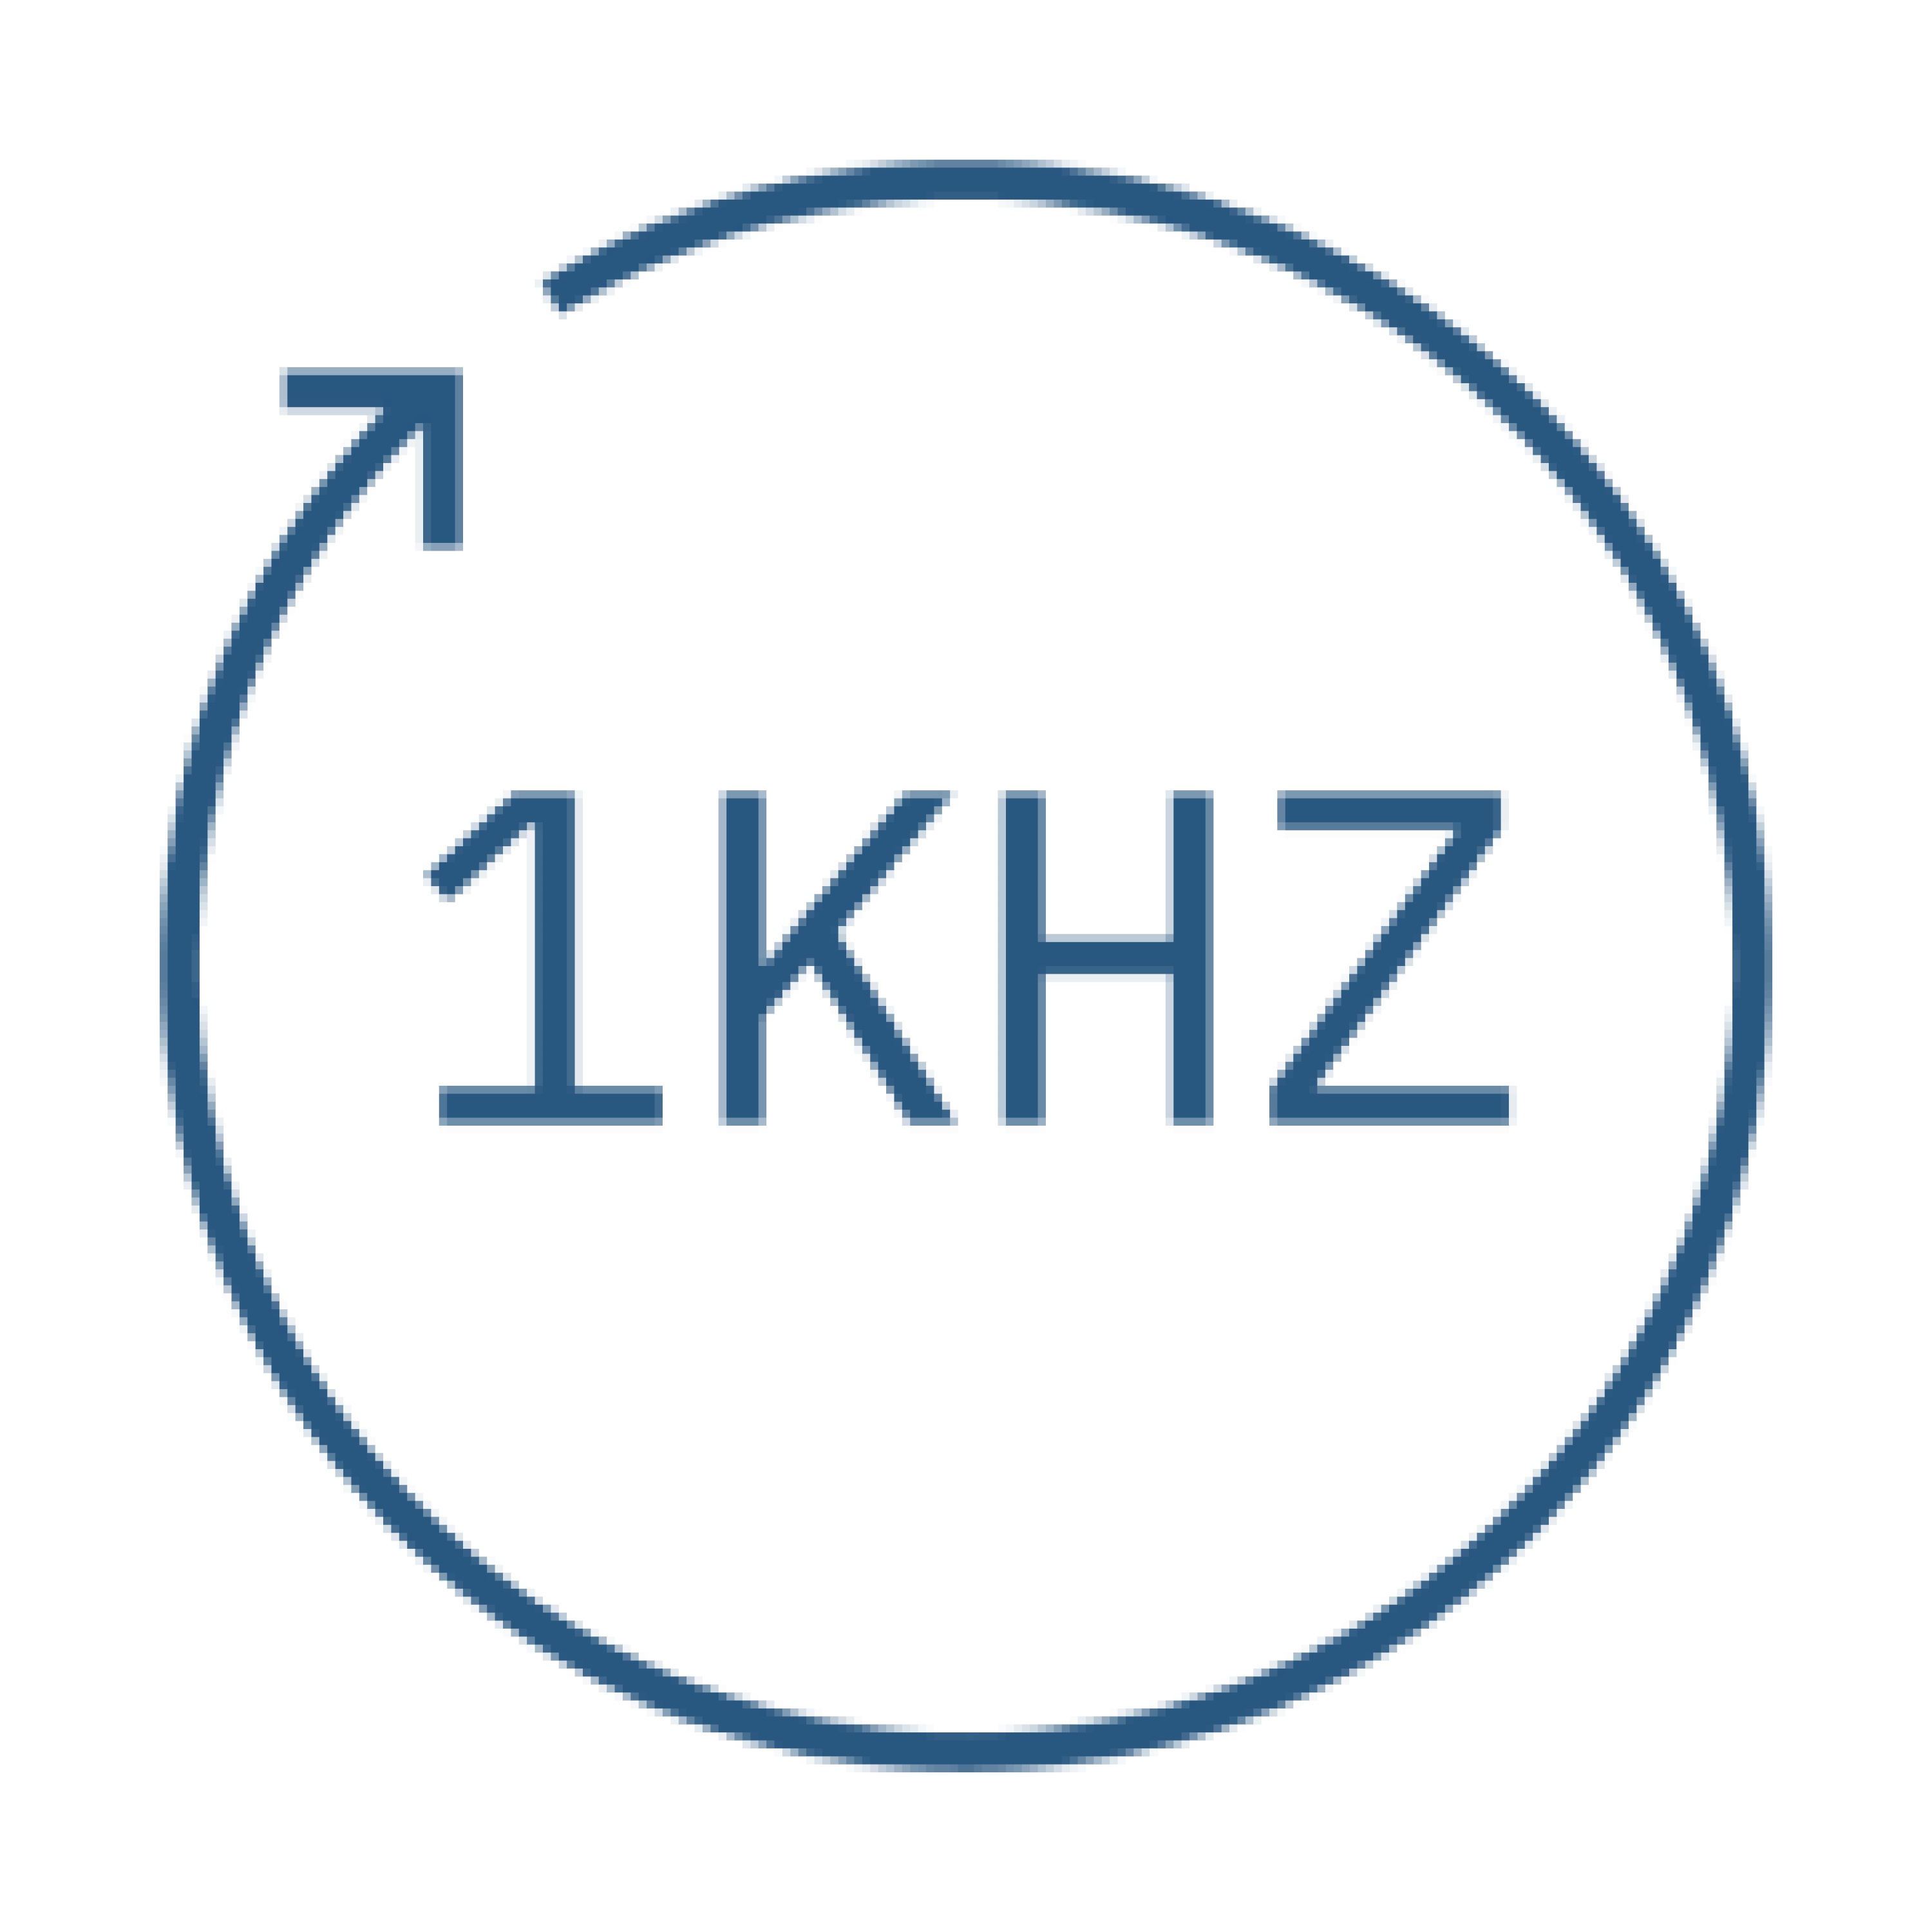 高精度力感知能力结合1kHz实时整机响应频率，保证了稳定、高良率的插装效果。